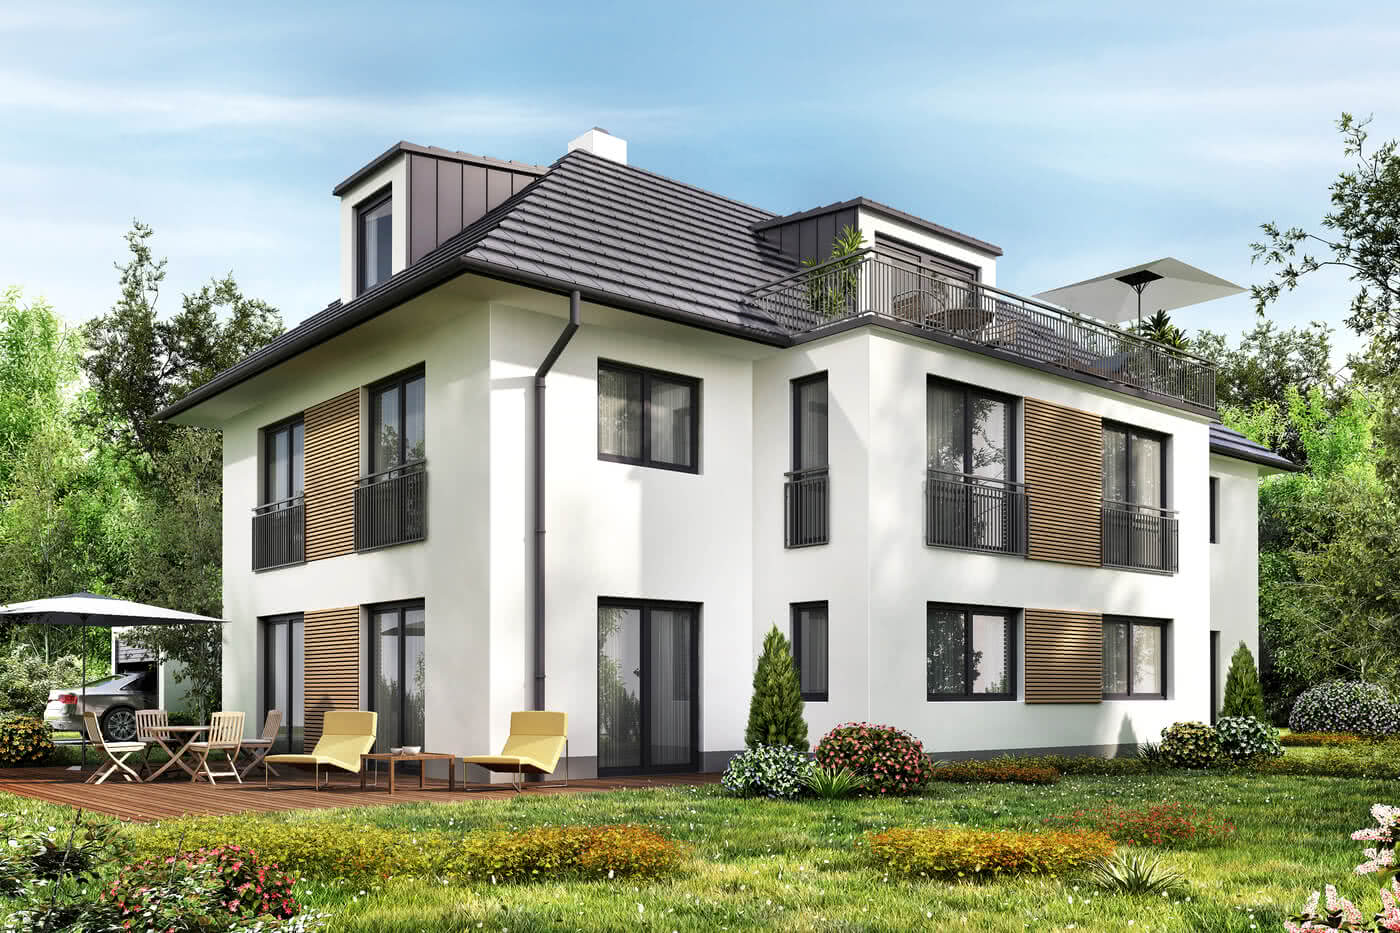 mehrfamilienhaus bauen beisipel ohne balkon